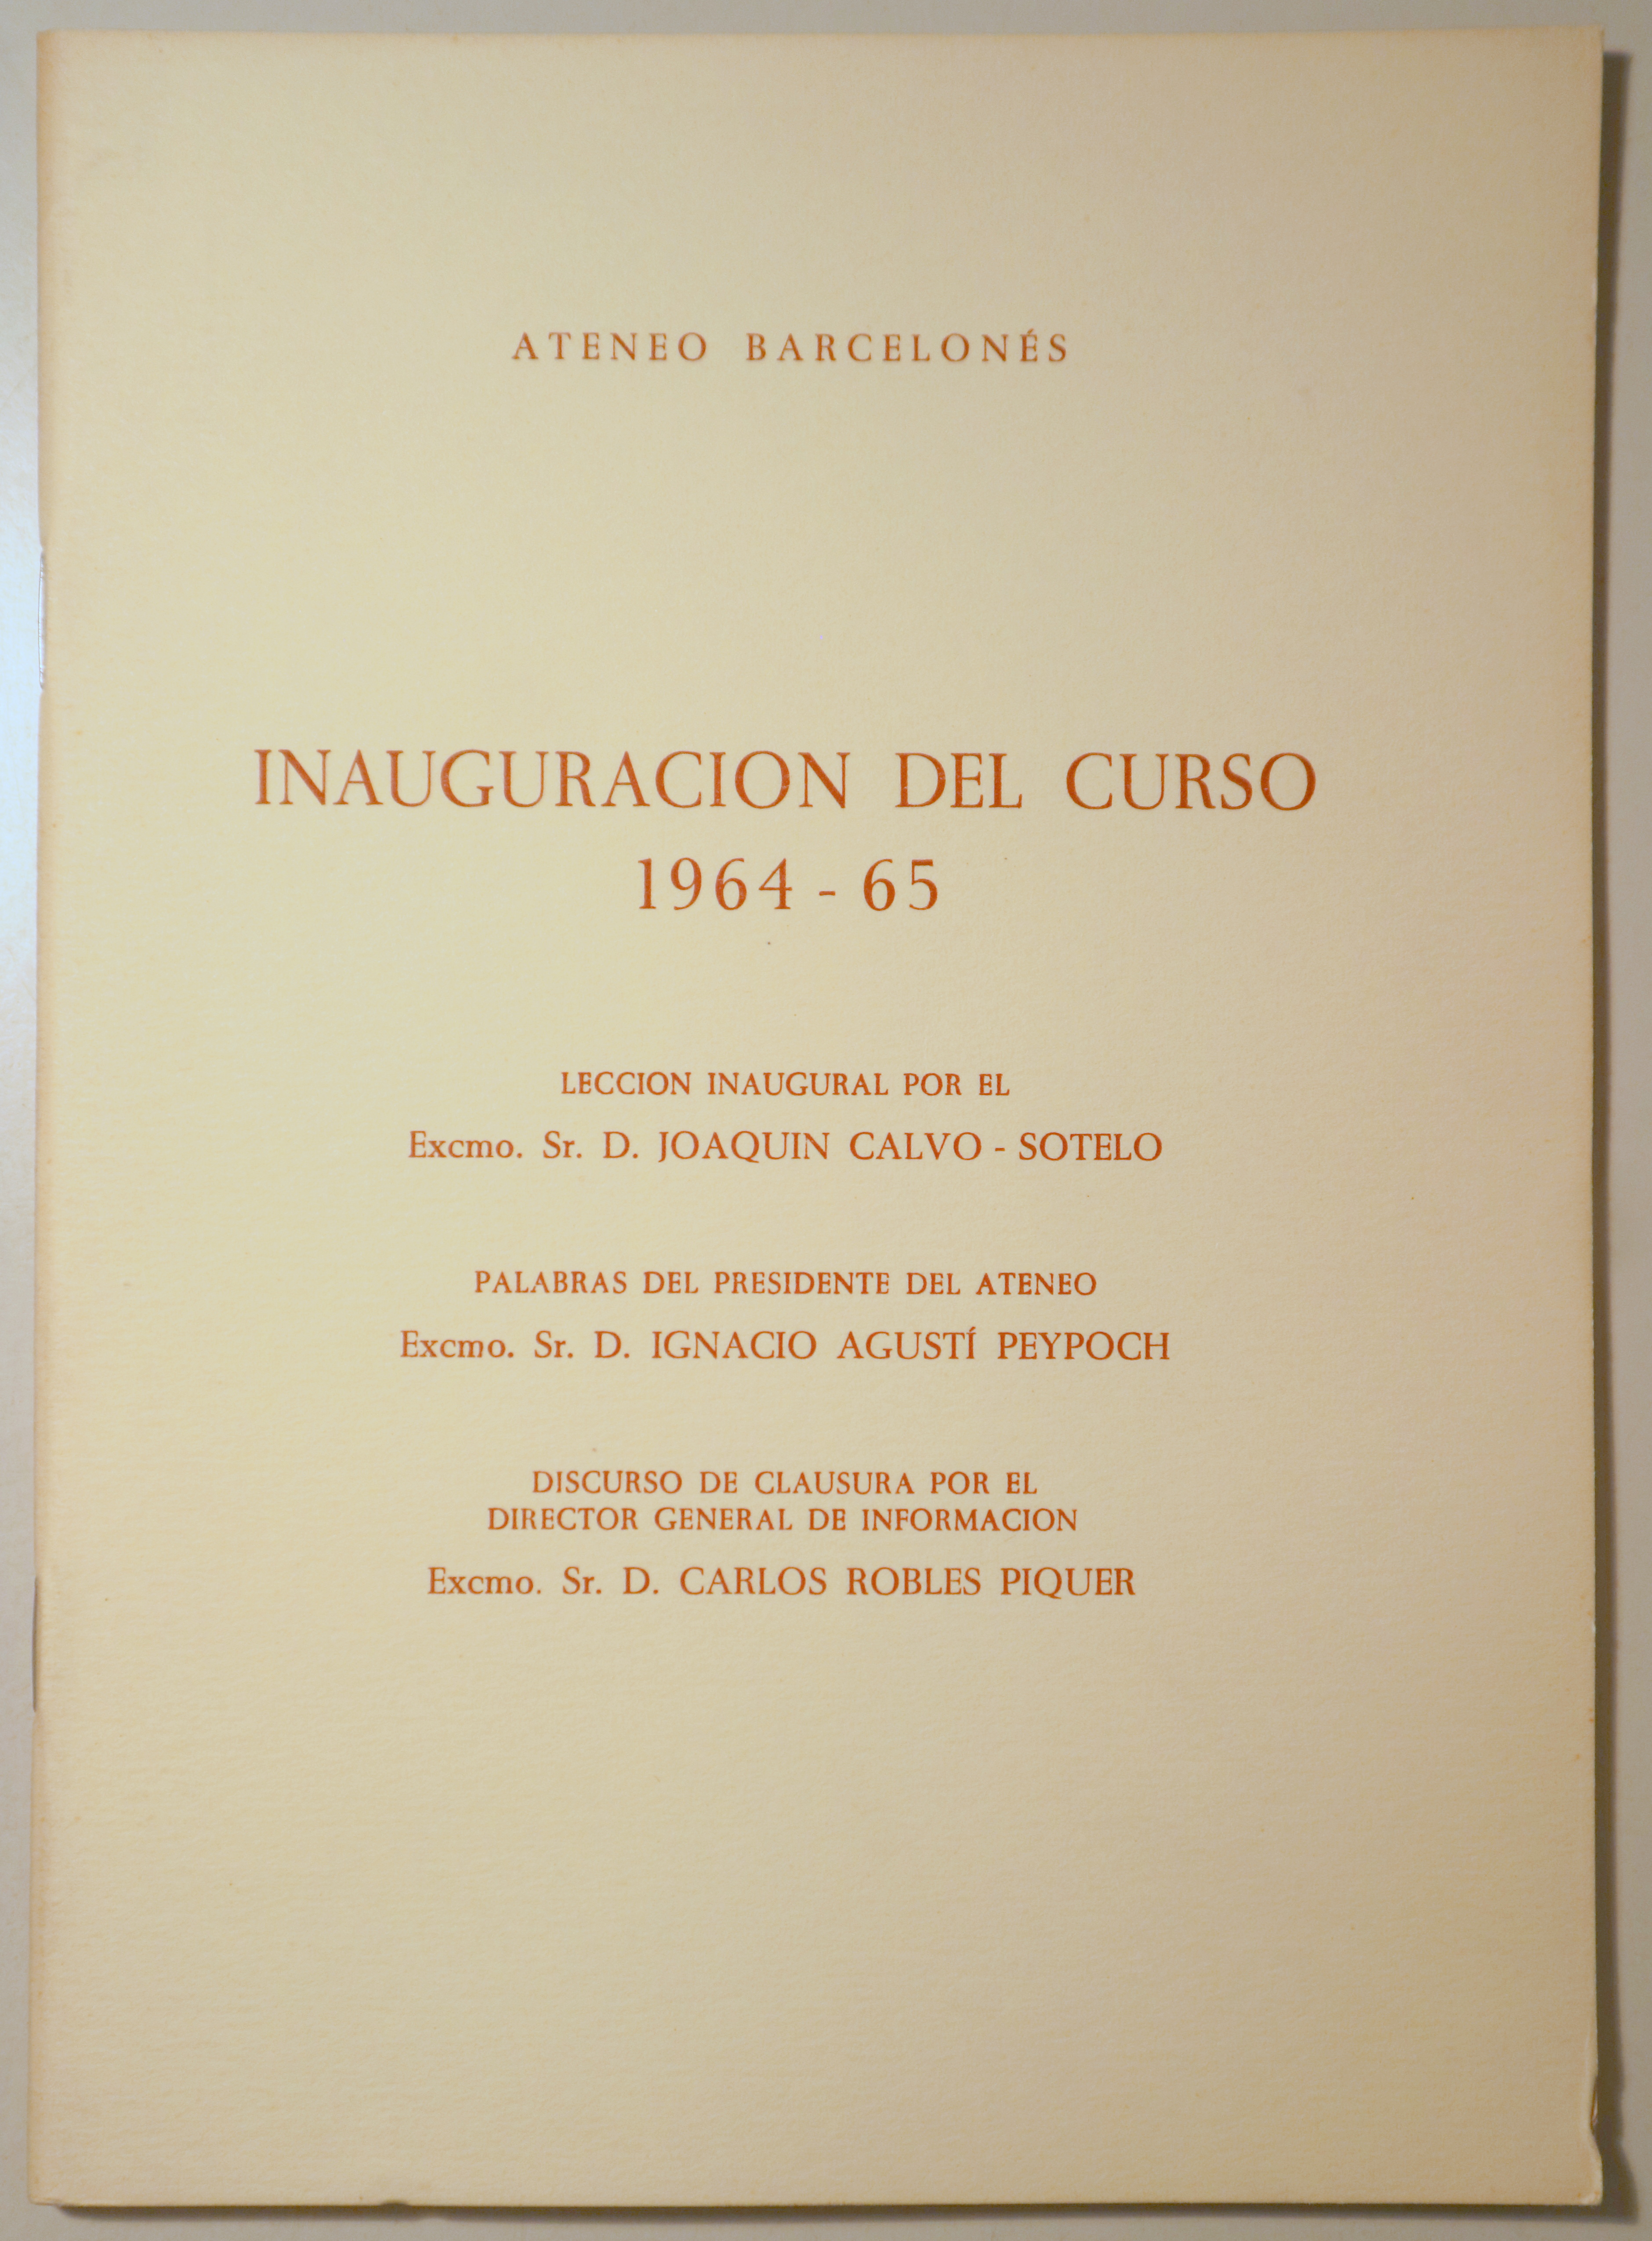 ATENEO BARCELONÉS. INAUGURACIÓN DEL CURSO 1964-65 - Barcelona 1965